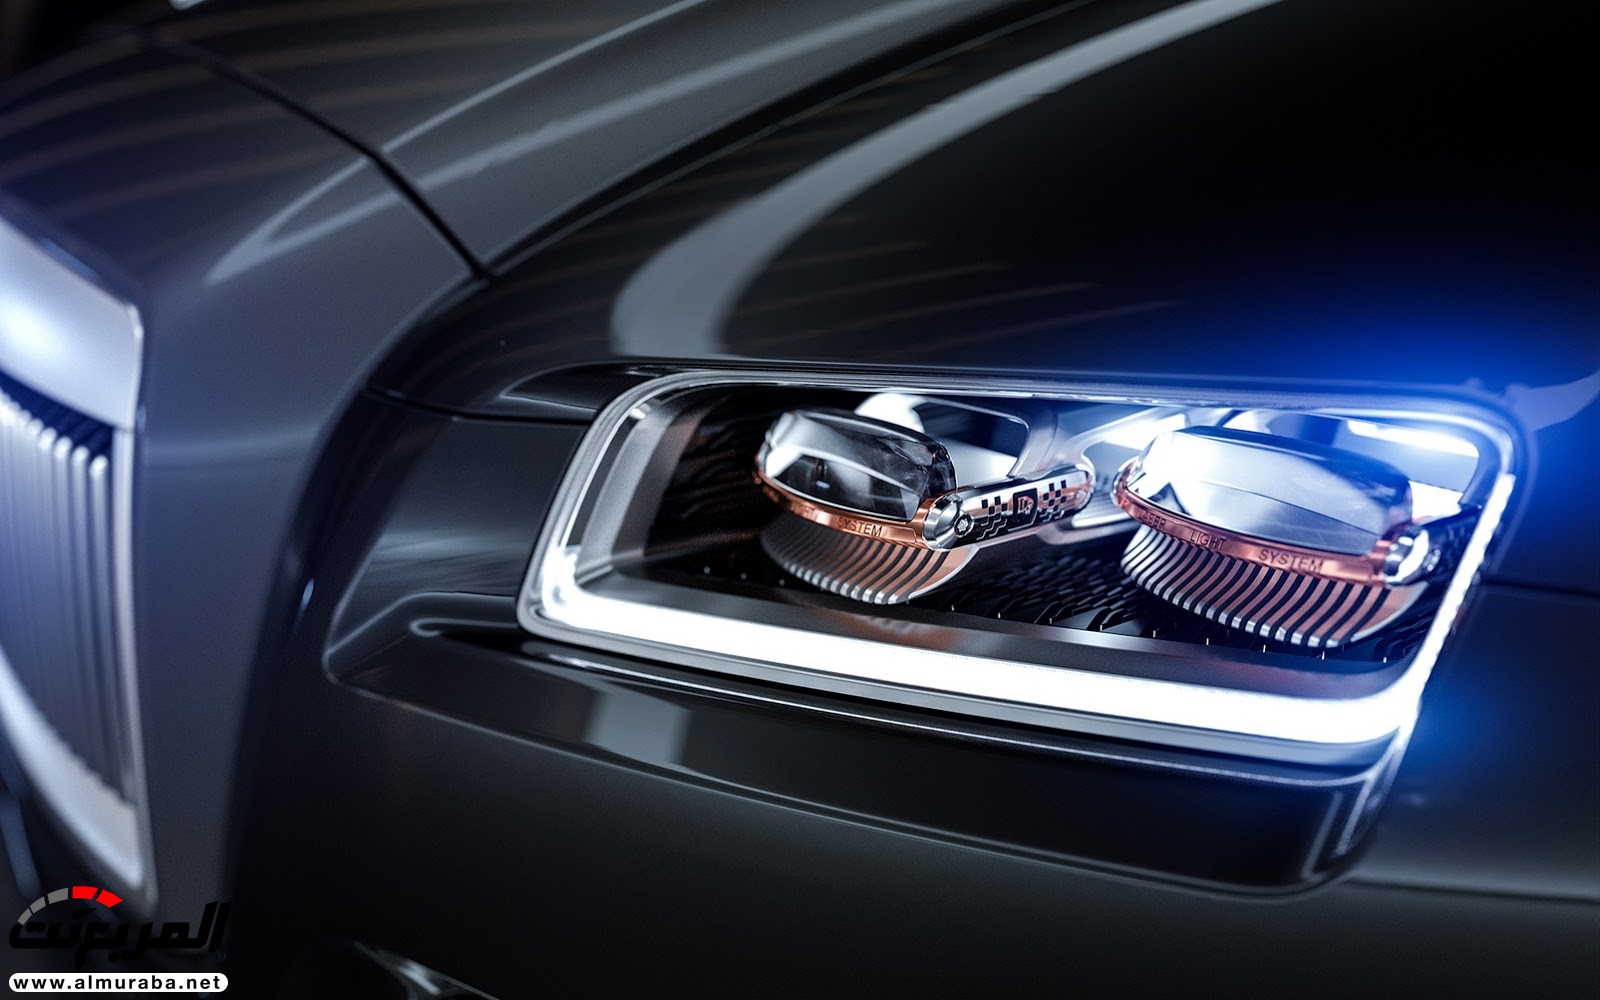 "صور افتراضية" لما يمكن أن تبدو عليه "رولز رويس" رايث كوبيه 2020 Rolls-Royce Wraith Coupe 59